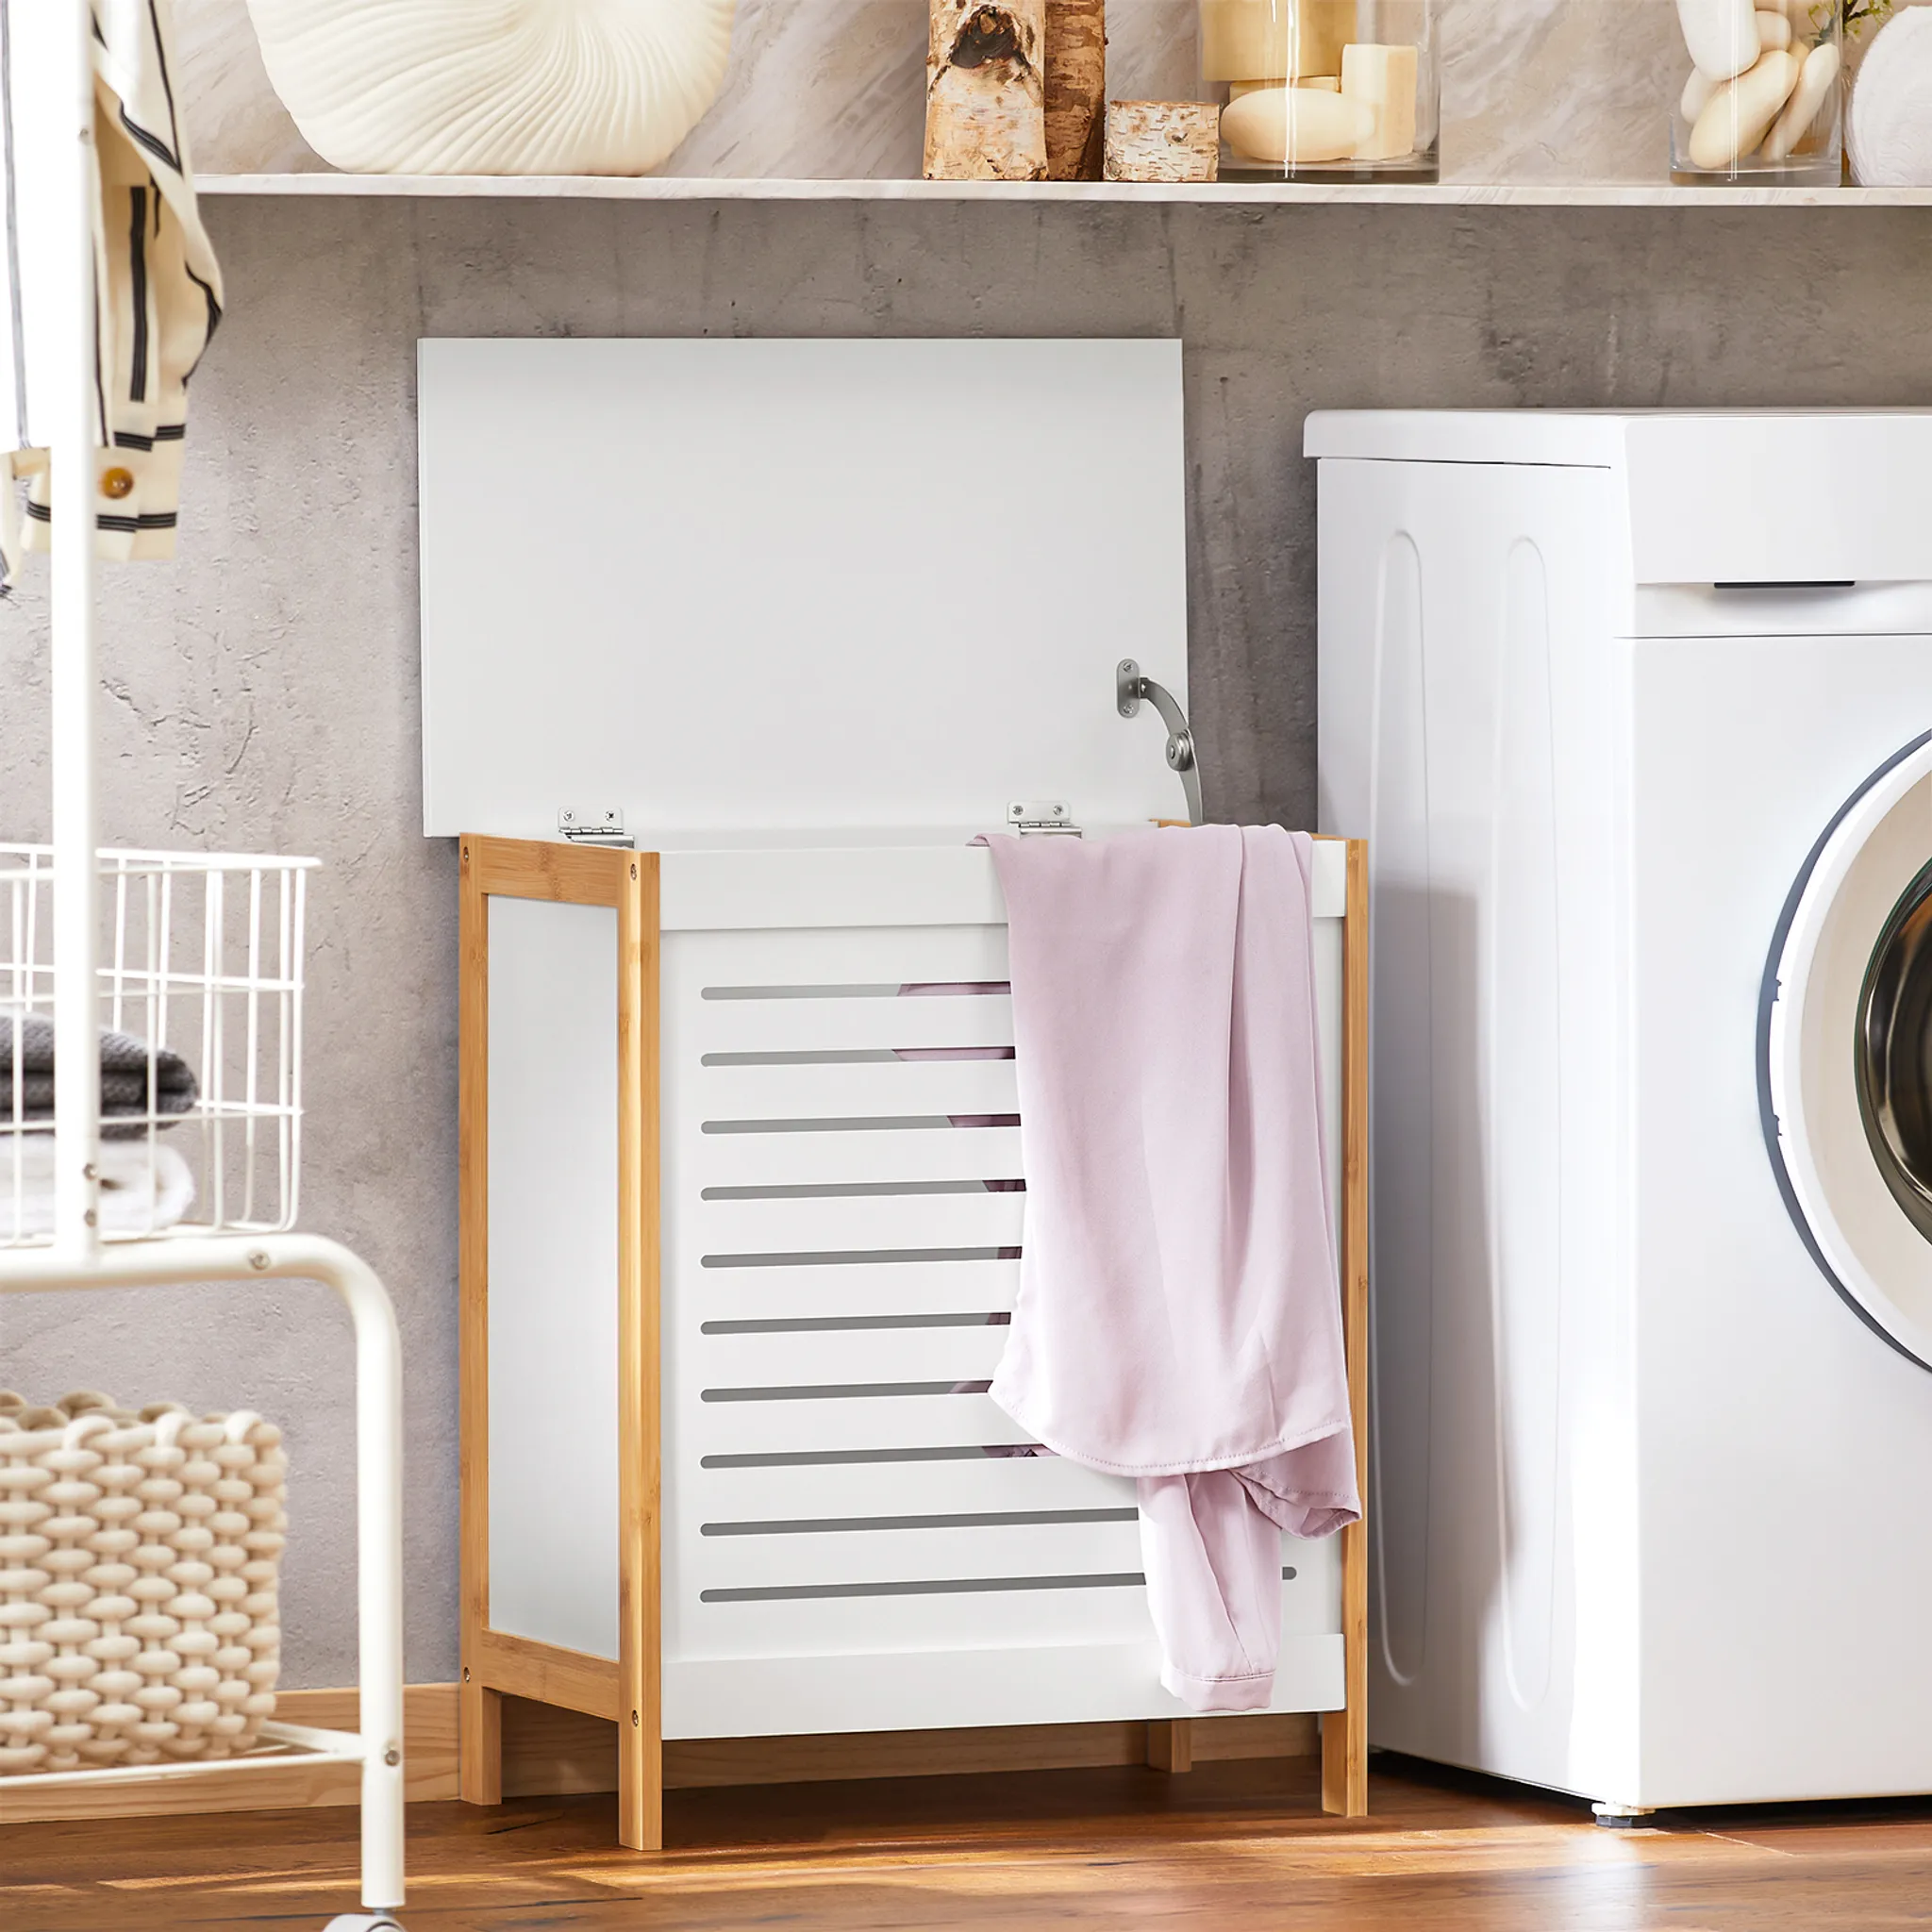 Wäschekorb: 10 trendy Wäschesammler für eure Schmutzwäsche